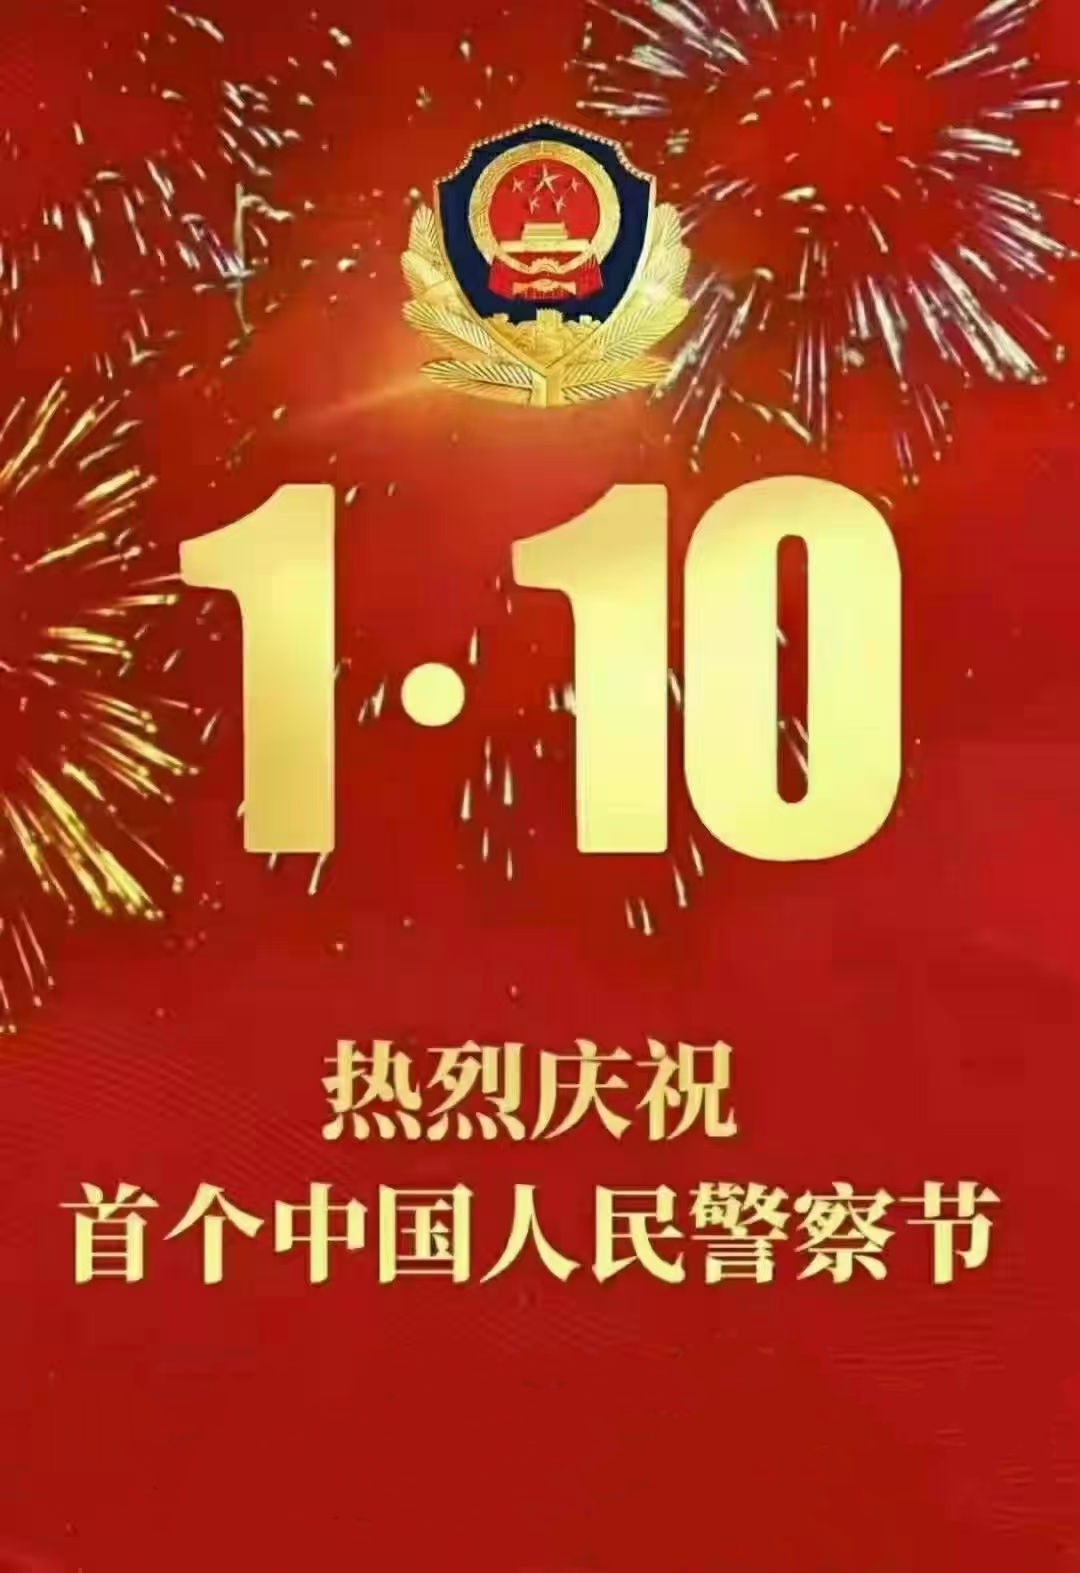 中国警察日祝福图片